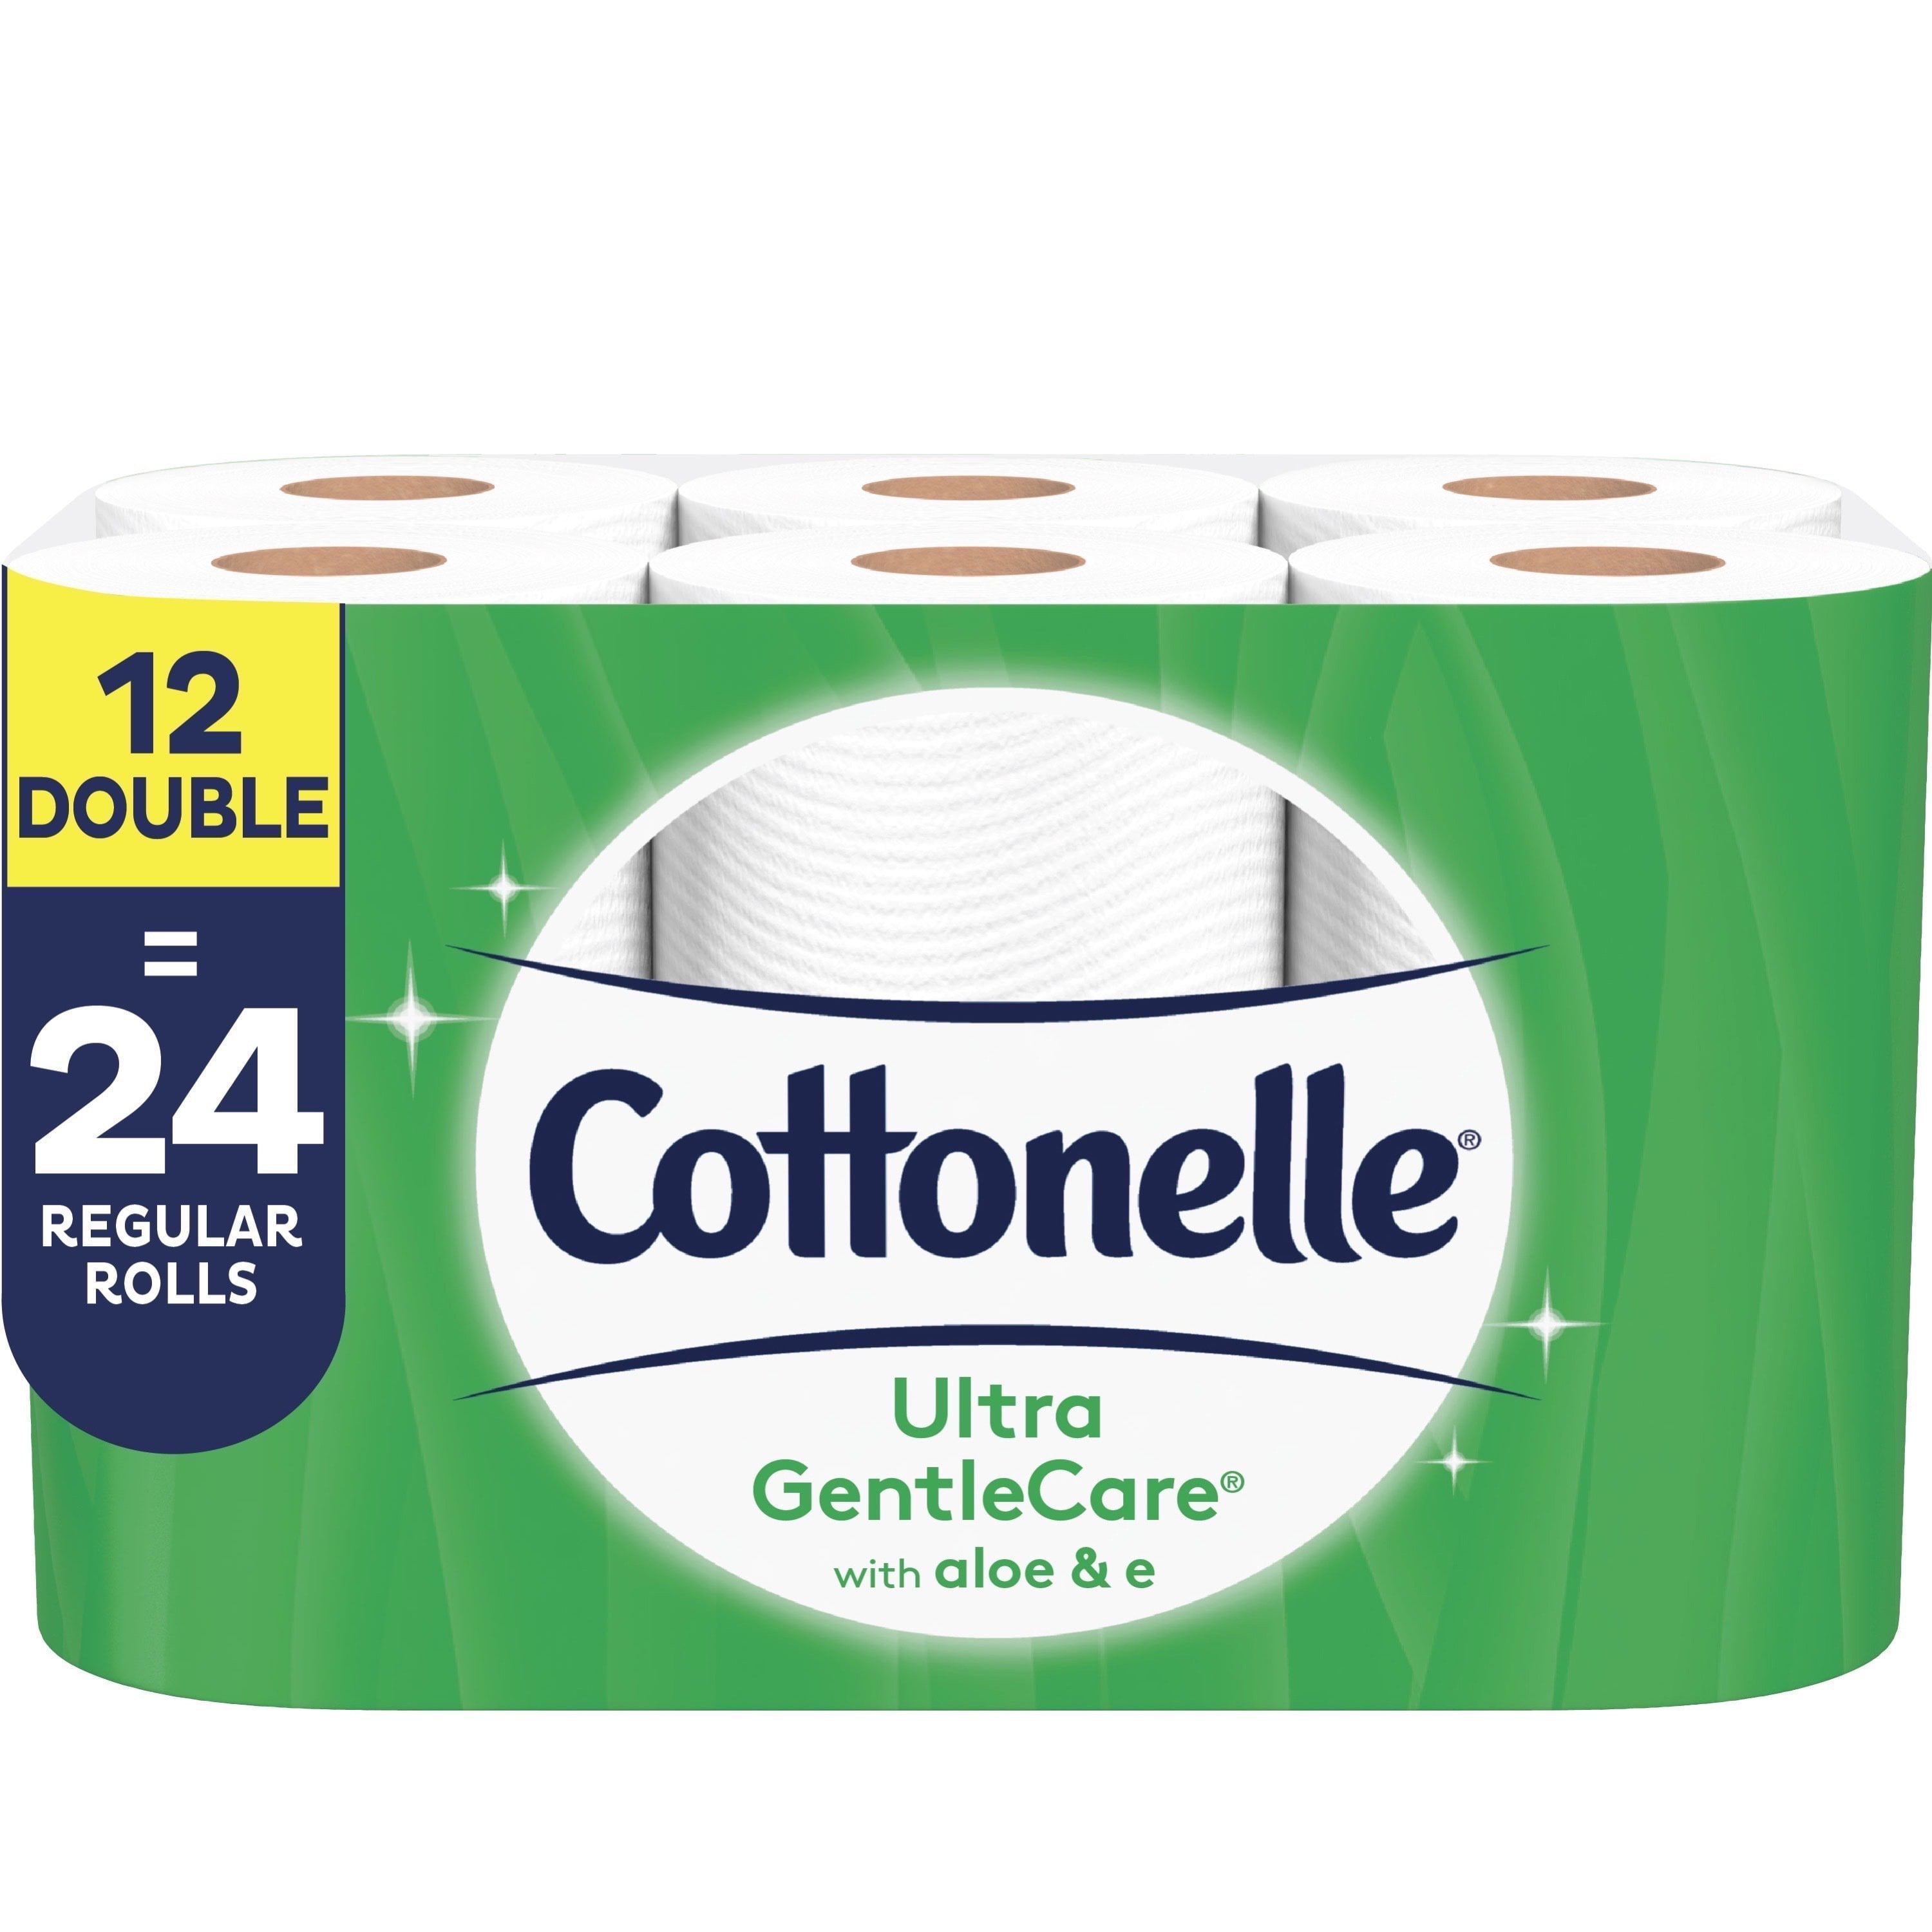 Photo 1 of Cottonelle Ultra GentleCare Toilet Paper, Aloe & Vitamin E, 12 Double Rolls, Bath Tissue